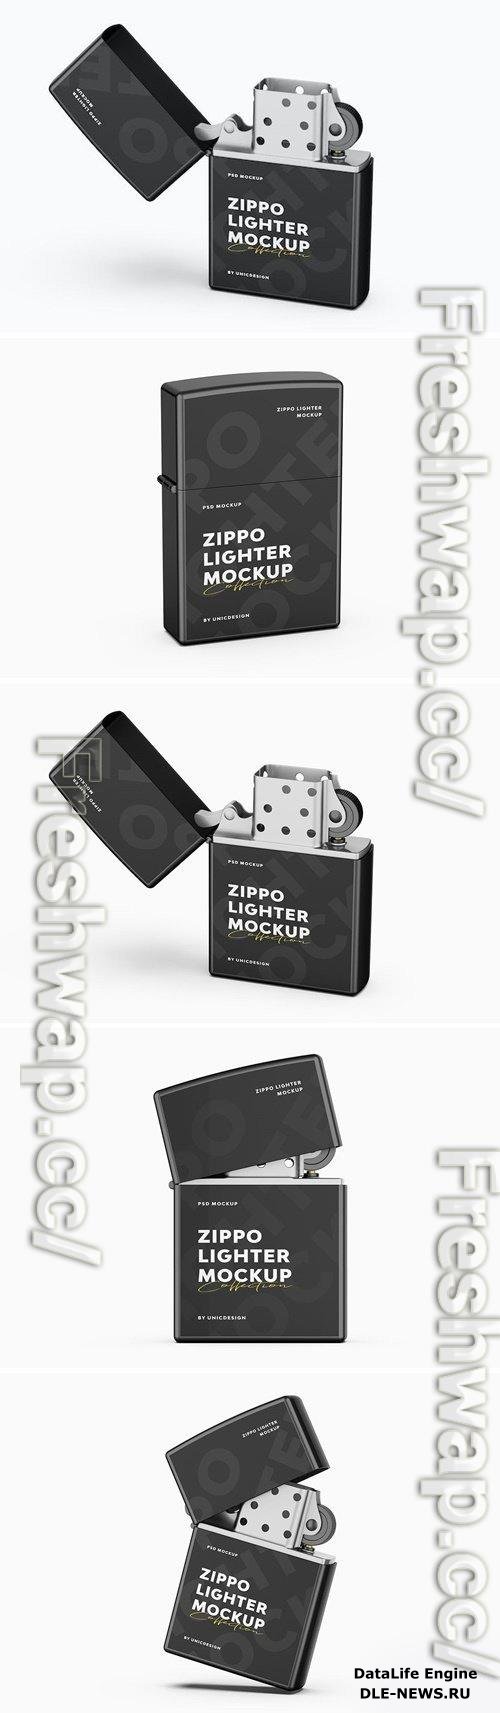 Zippo Lighter Mockup BJR3GBL